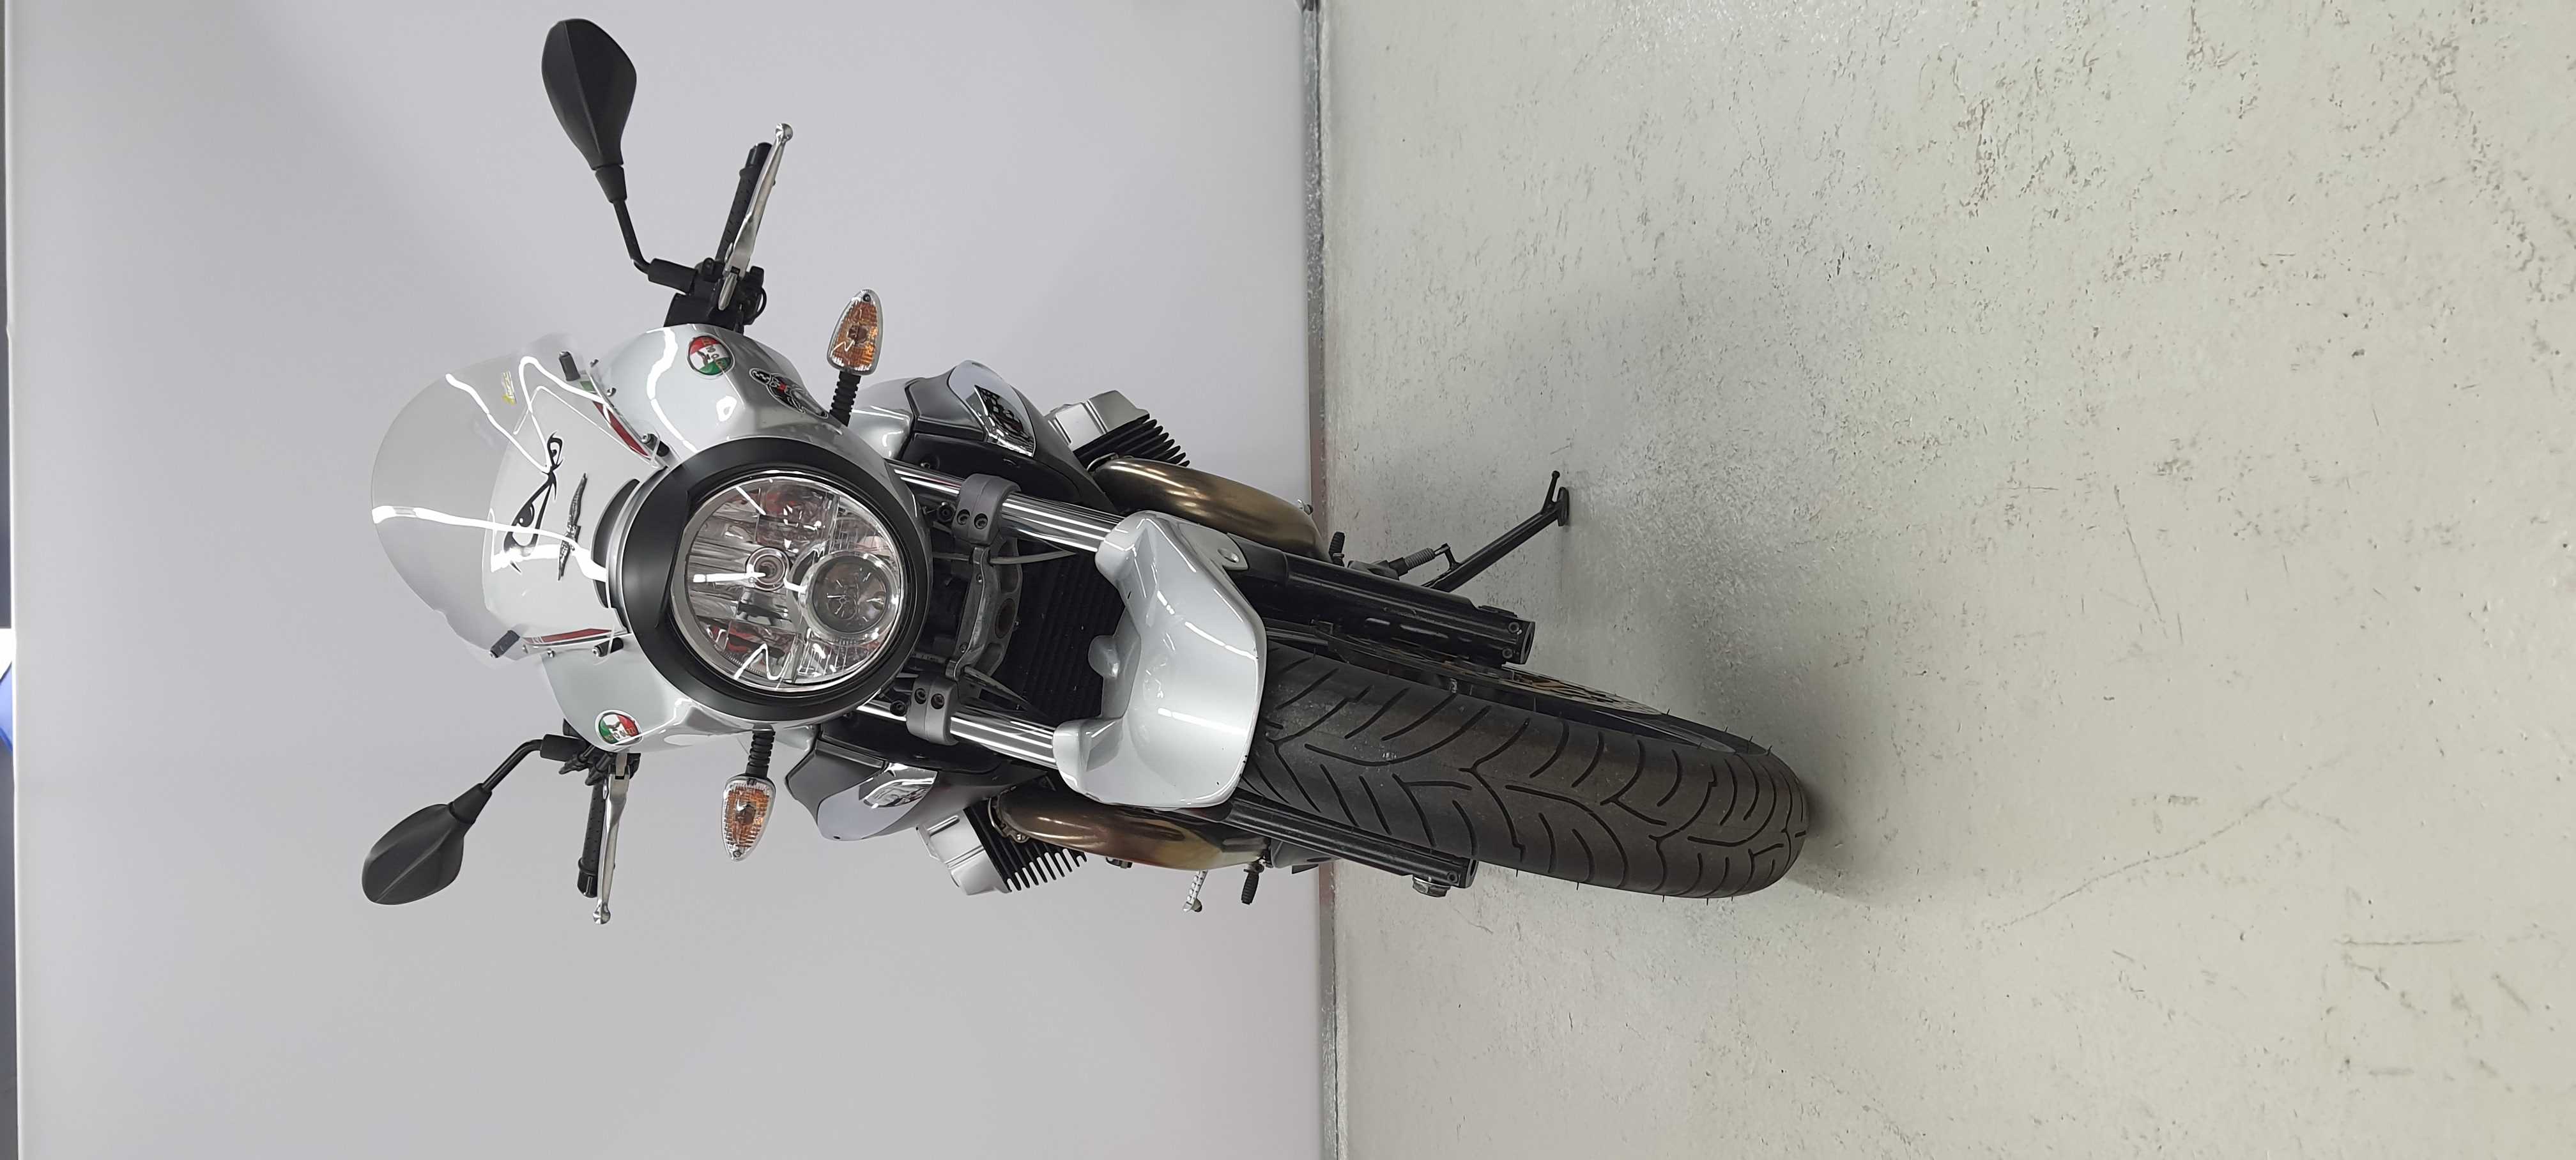 Moto Guzzi SPORT 1200 8V E3 2010 HD vue avant